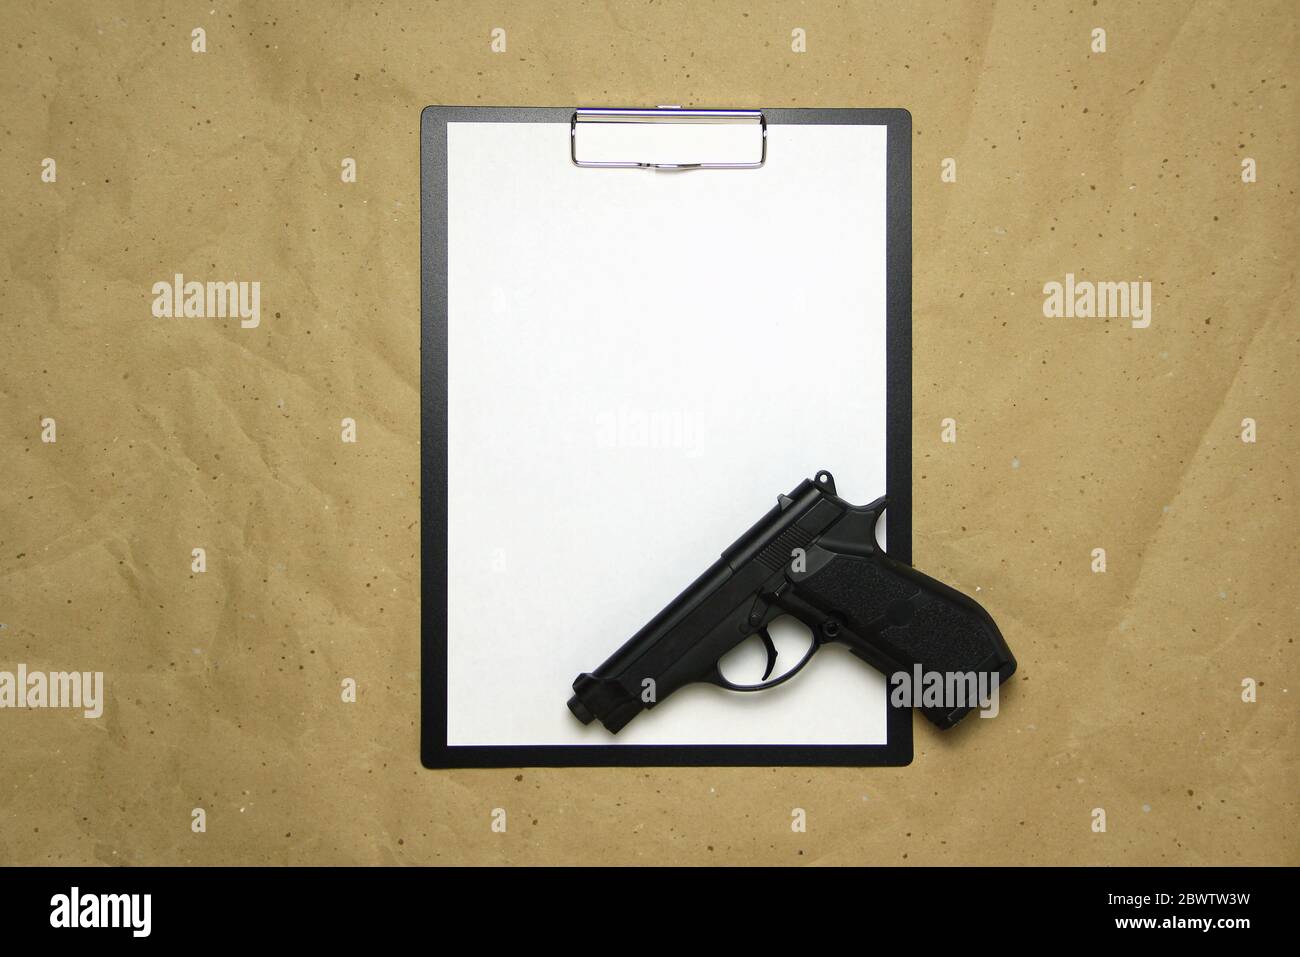 Ein Tablett mit einem weißen Blatt im A4-Format mit Pistole auf einem beigen Bastelpapier. Konzept des Rechtssystems, kriminelle Organisationen, Sicherheitsdienste. Stock Foto mit leerem Platz für Ihren Text und Design. Stockfoto